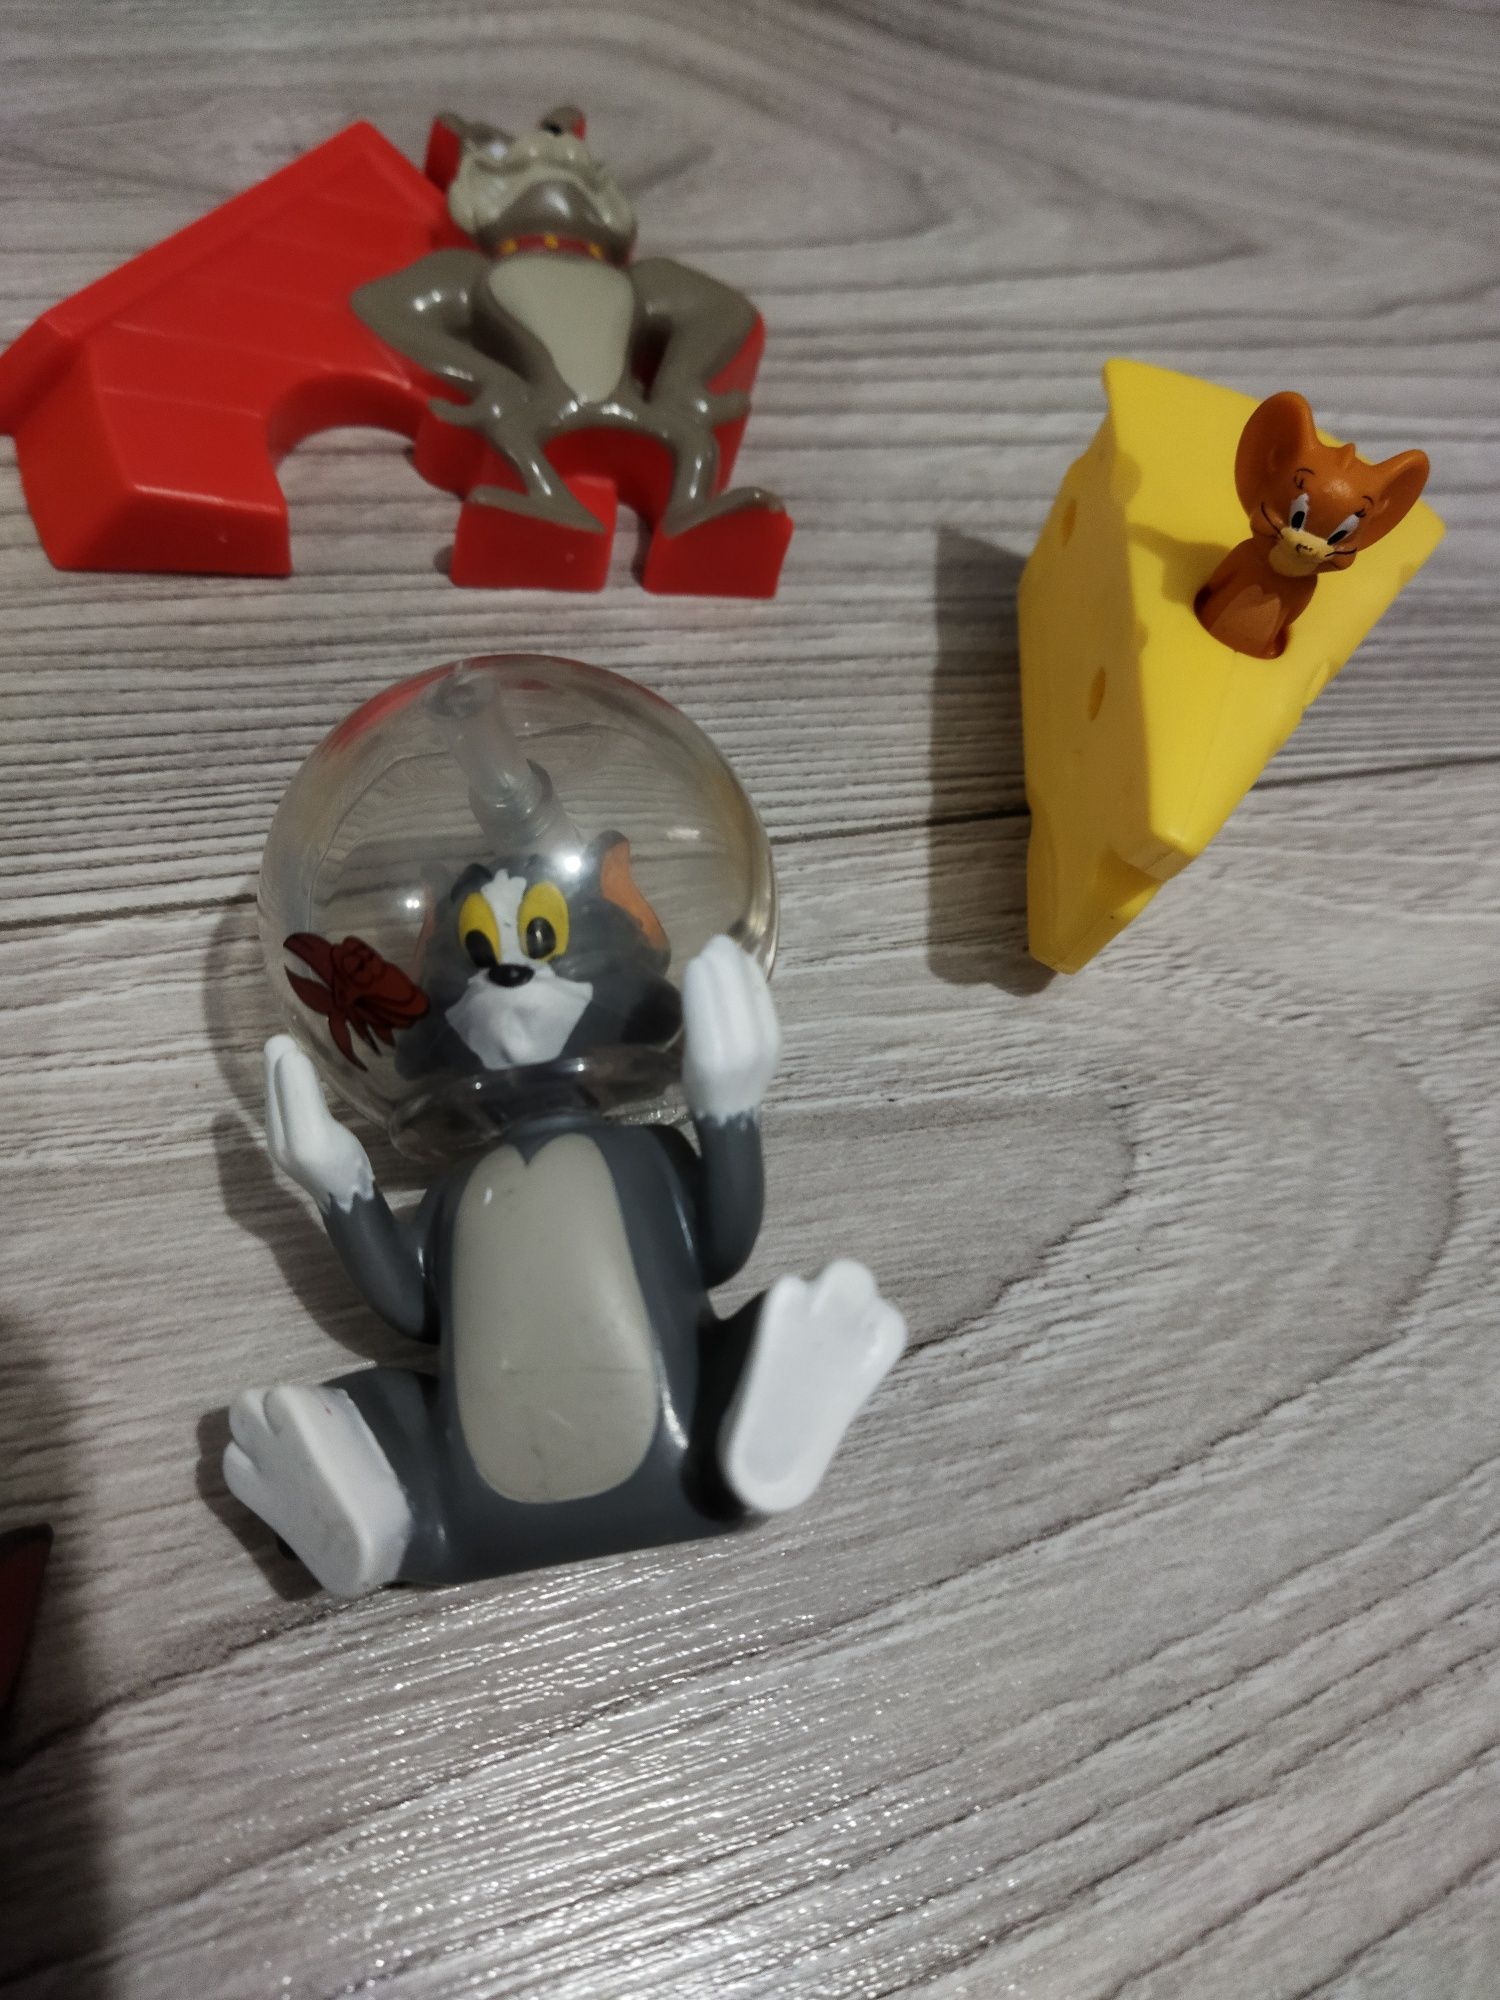 Lot jucării brelocuri figurine Tom și Jerry